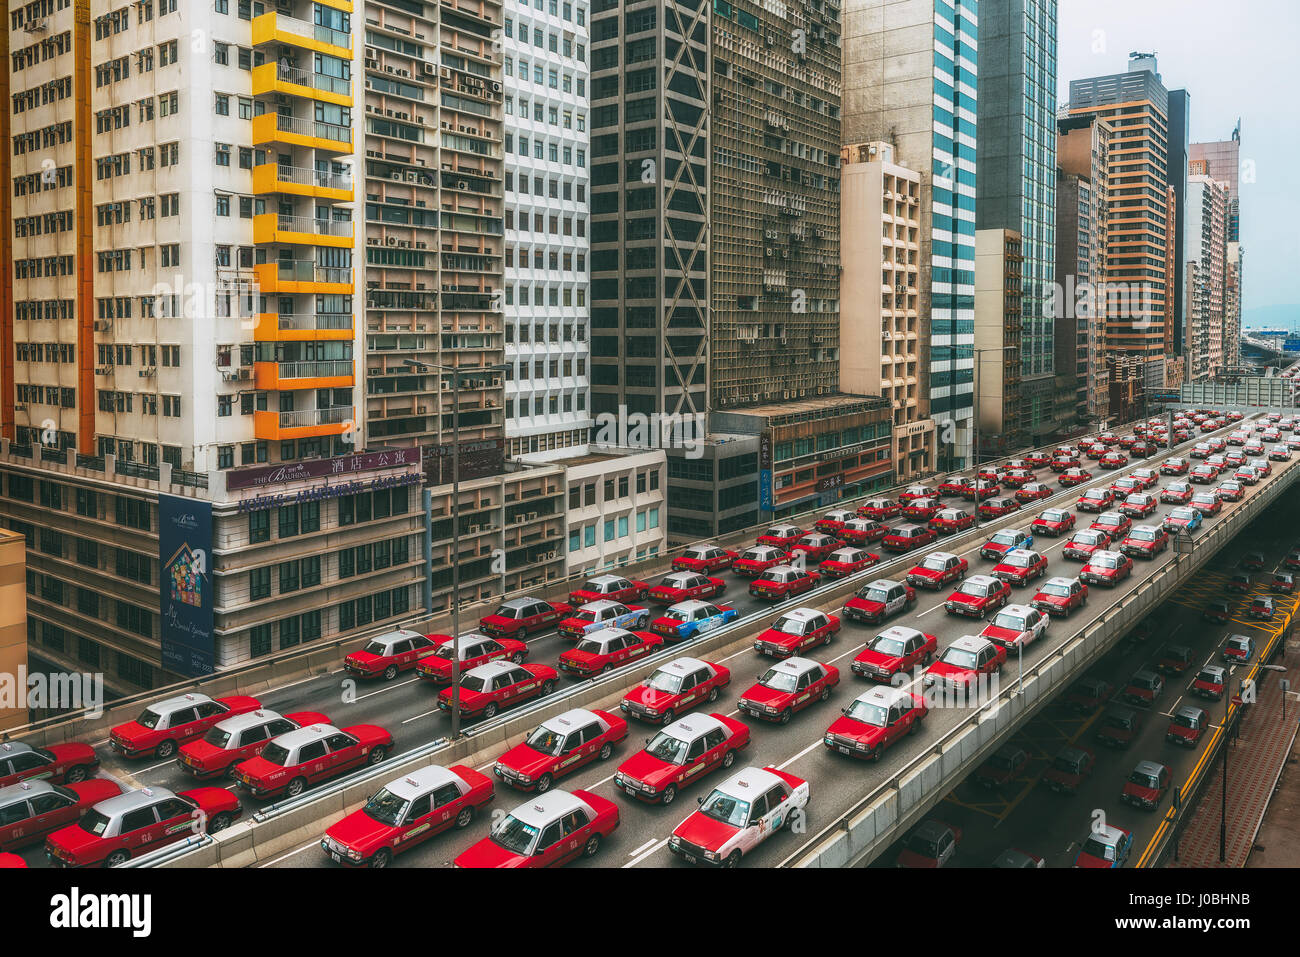 HONG KONG, CHINA: Überhaupt gewundert, wie Ihre Stadt aussehen würde, wenn Taxis die Straßen regiert? Diese befremdliche Bilder geben einen Einblick in eine seltsame Welt, wo Taxis dominieren, wie durch ein Reisefotograf konzeptualisiert.  Die roten und weißen Taxis von Kowloon in Hong Kong kann gesehene Nase zu Endstück rund um die legendäre Stadt schlängelt.  Andere Bilder zeigen eine Formation von Flugzeugen in den Himmel als auch erhöhten Straßenbahnen. Australische Fotograf Peter Stewart (31), jetzt Leben in Hongkong Taxi Übernahme vorgestellt und bis zu sechs mühevolle stundenlang um jedes komplette Foto zu erzeugen. Stockfoto